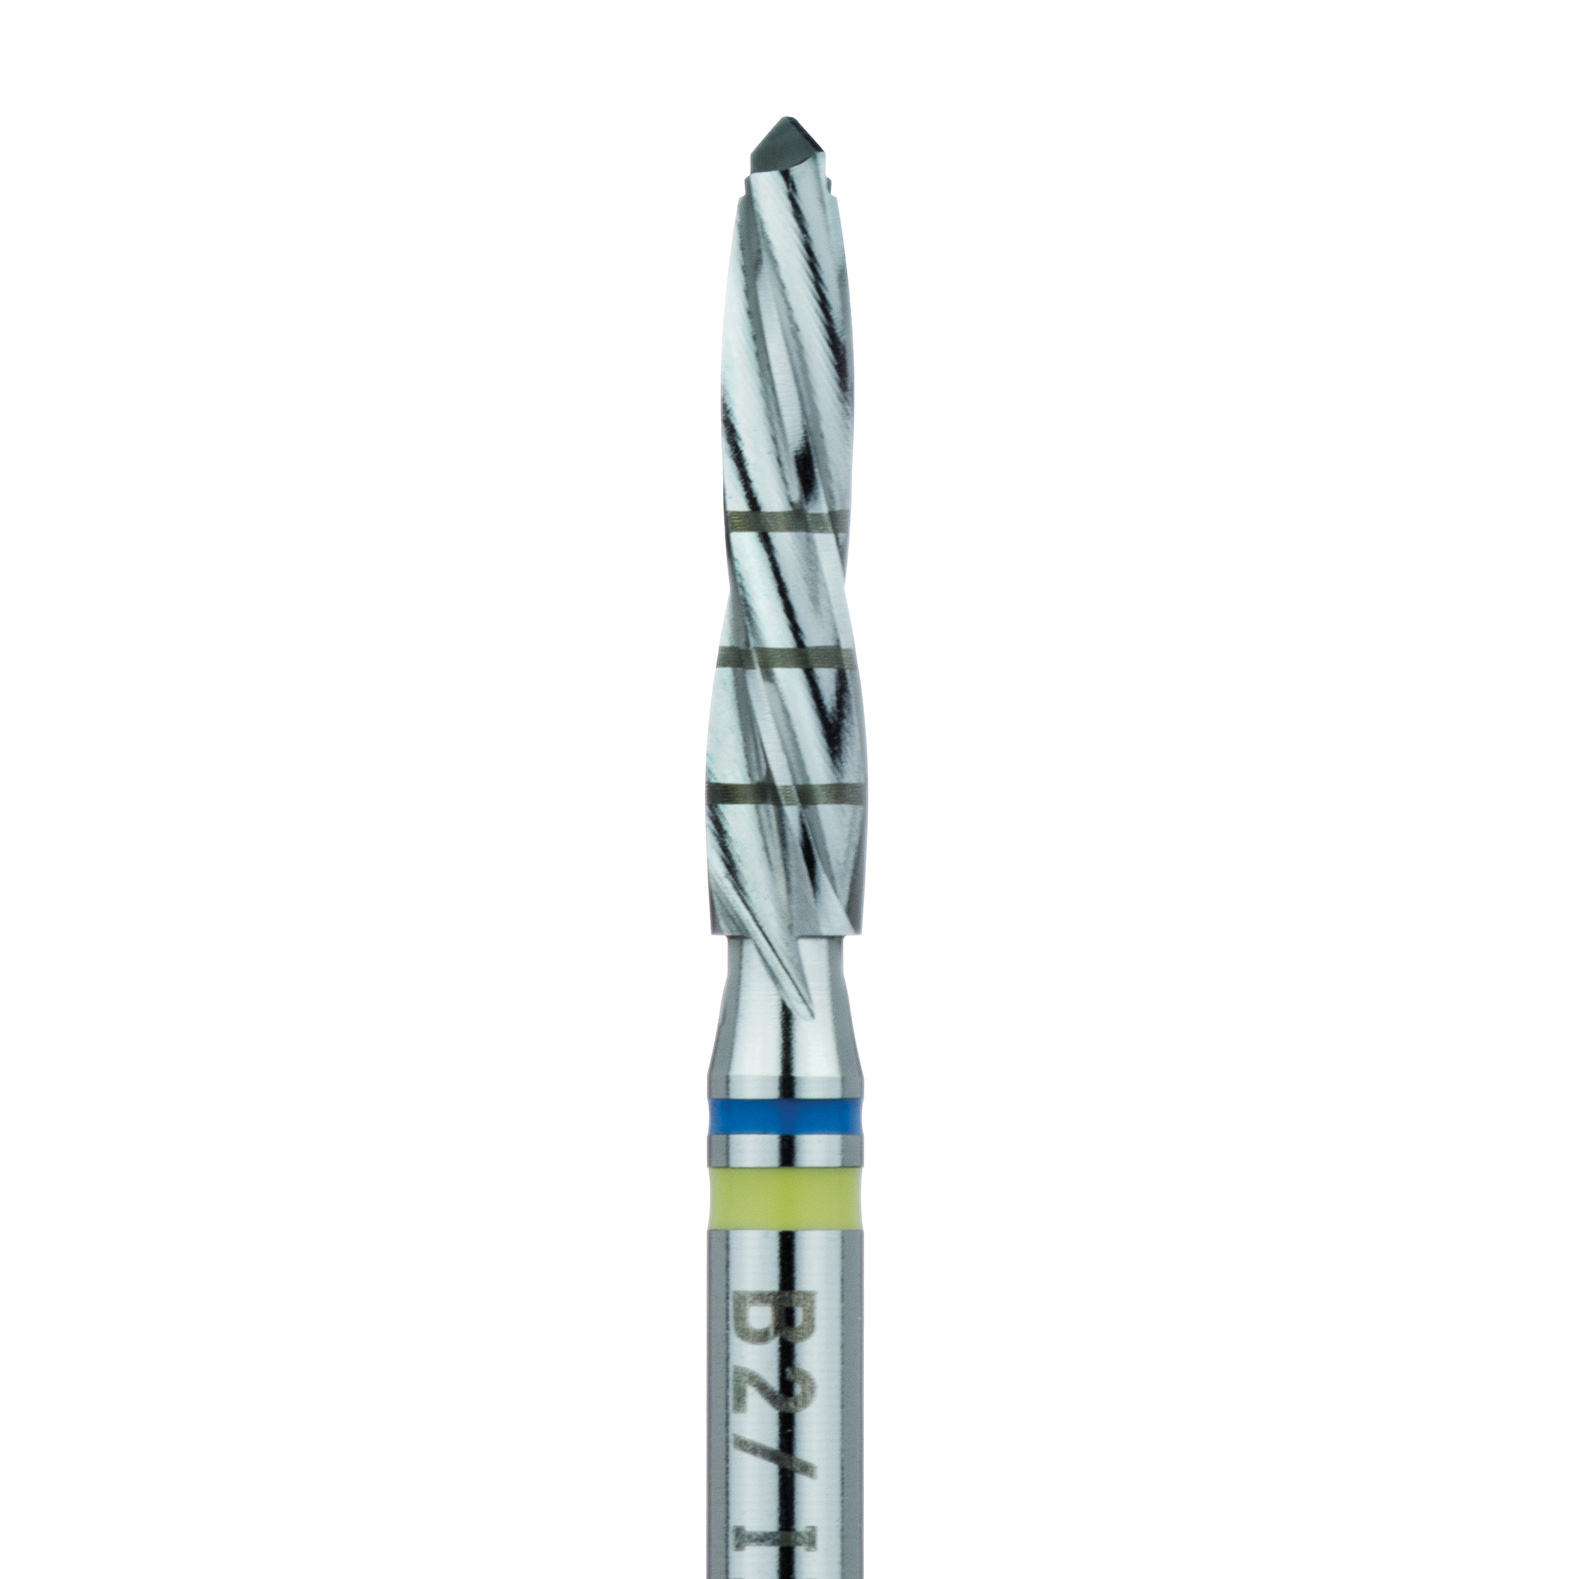 B2004 Surgery, Blue / Green, Expansion Drill, 2.7mm Ø, 12mm Long, RAL